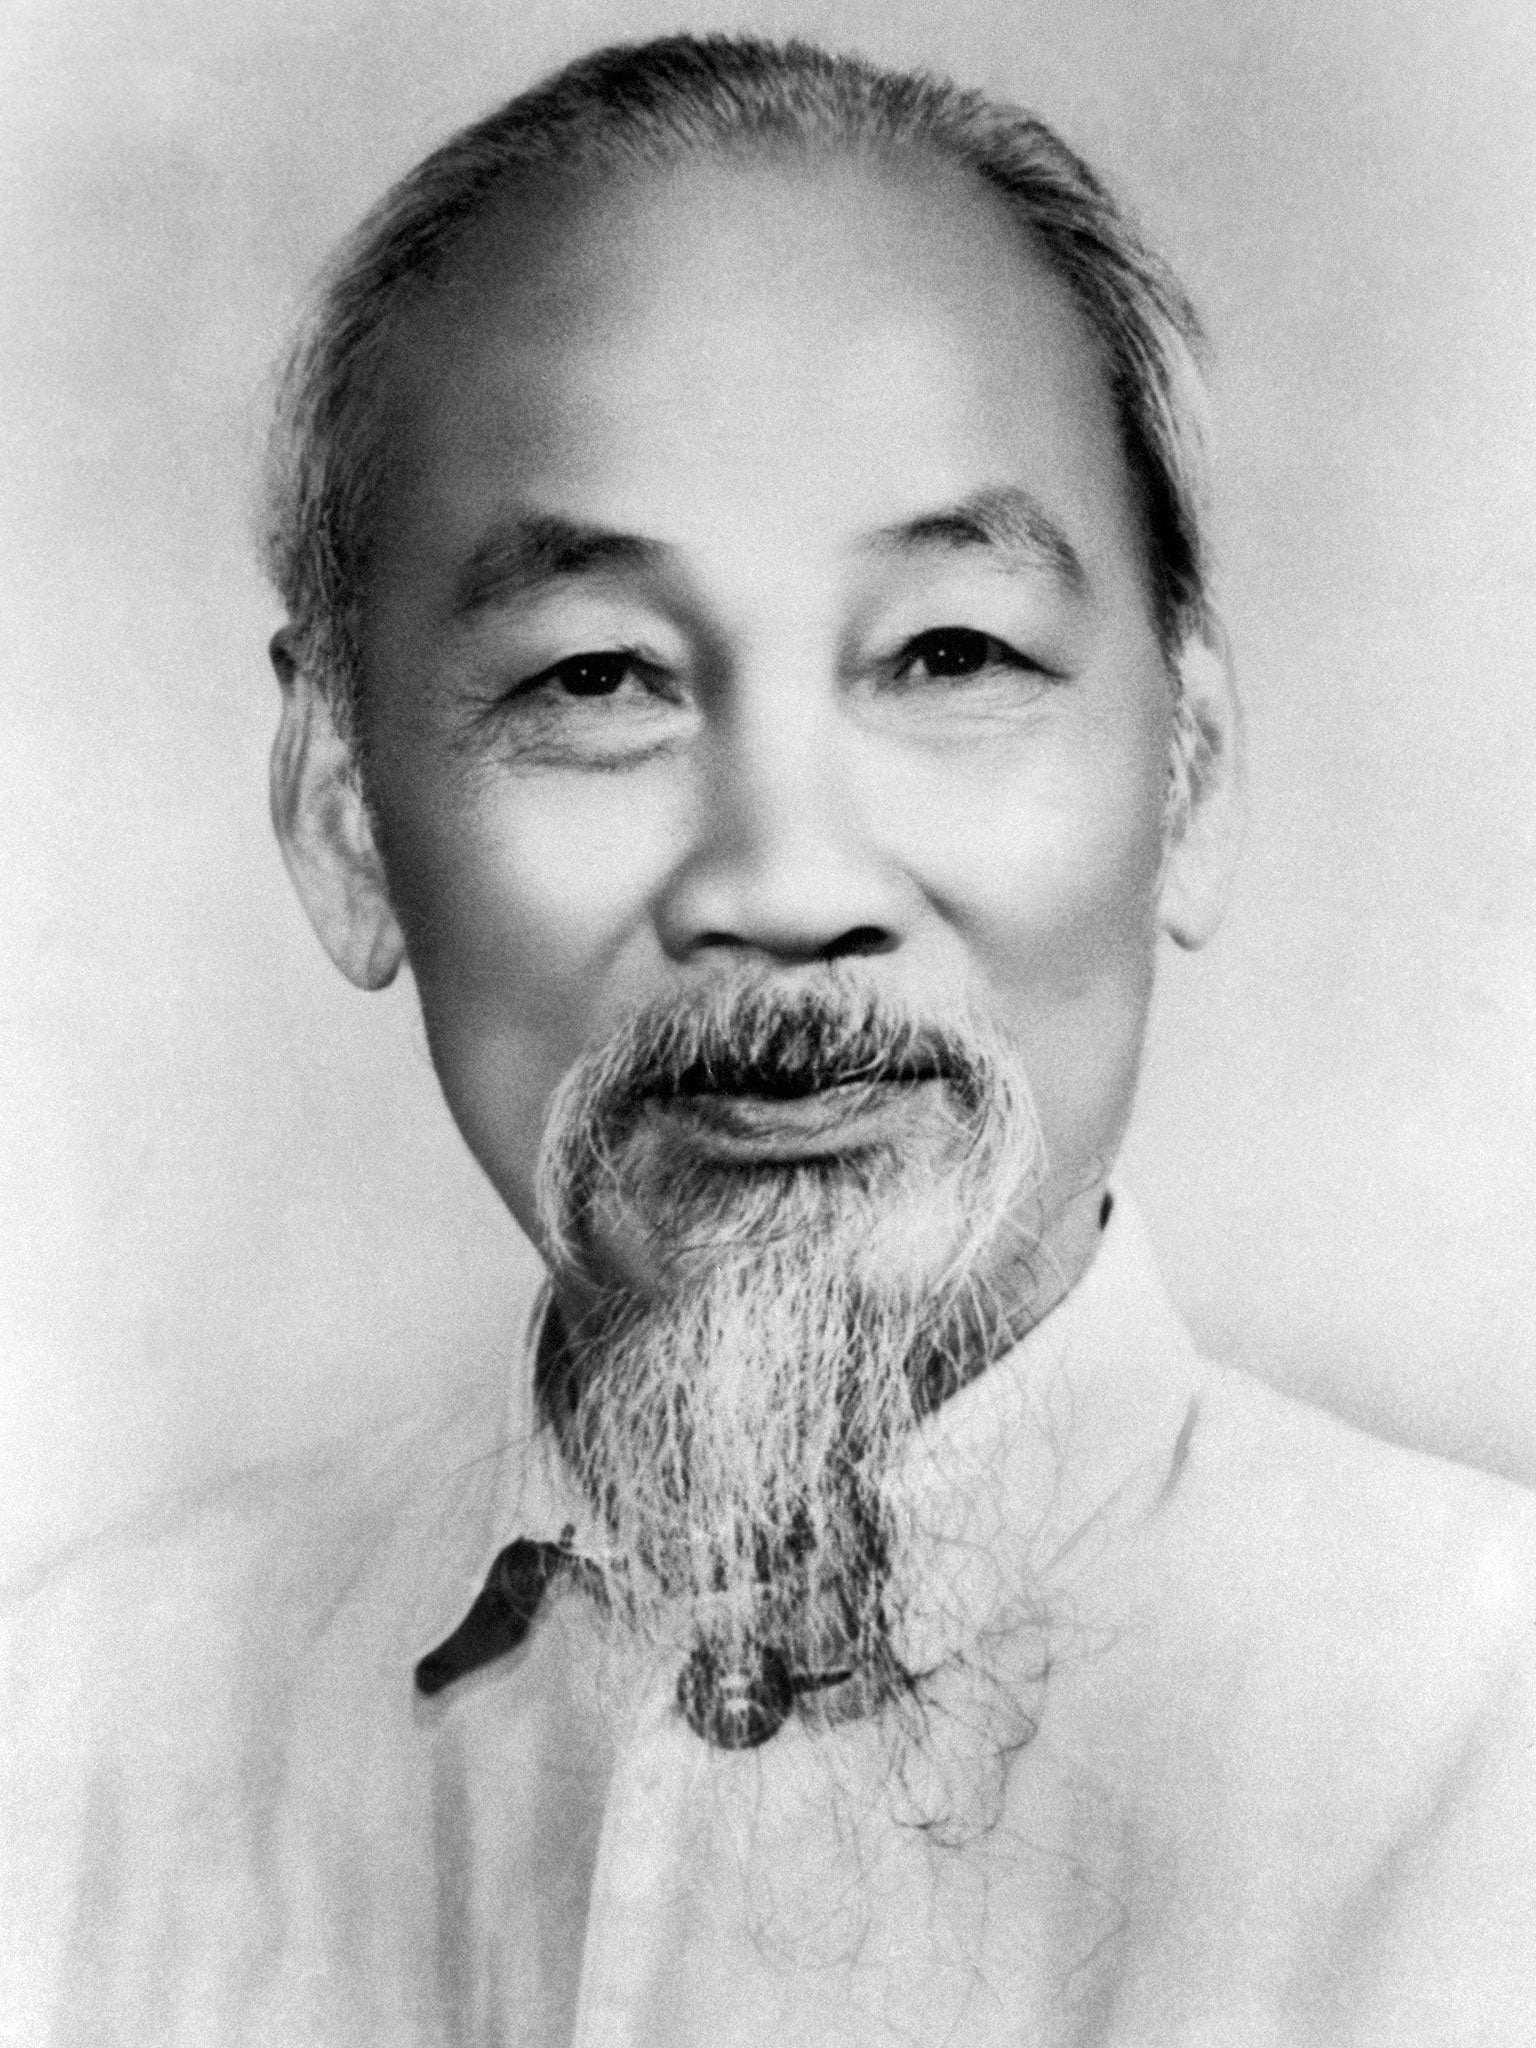 Ho Chi Minh, revolutionary leader of North Vietnam, in 1966